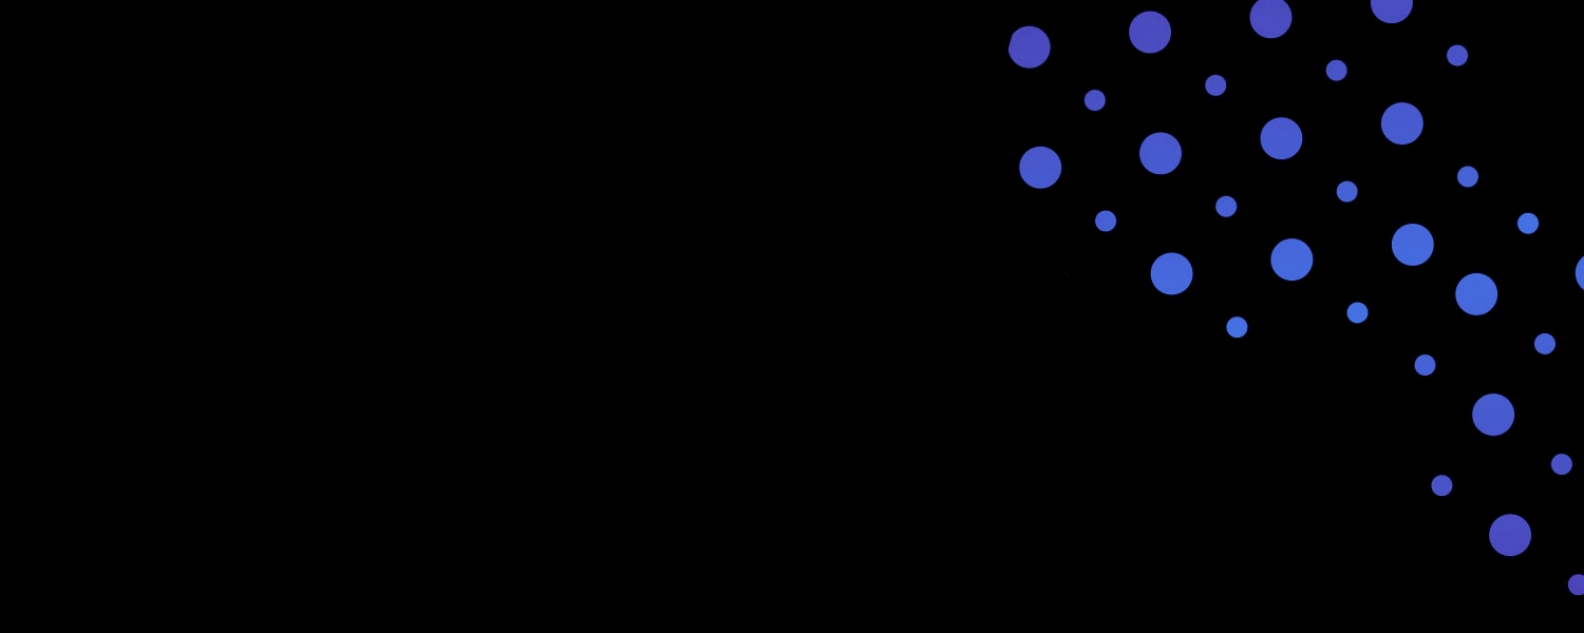 Fond noir avec cercles bleus et violets 